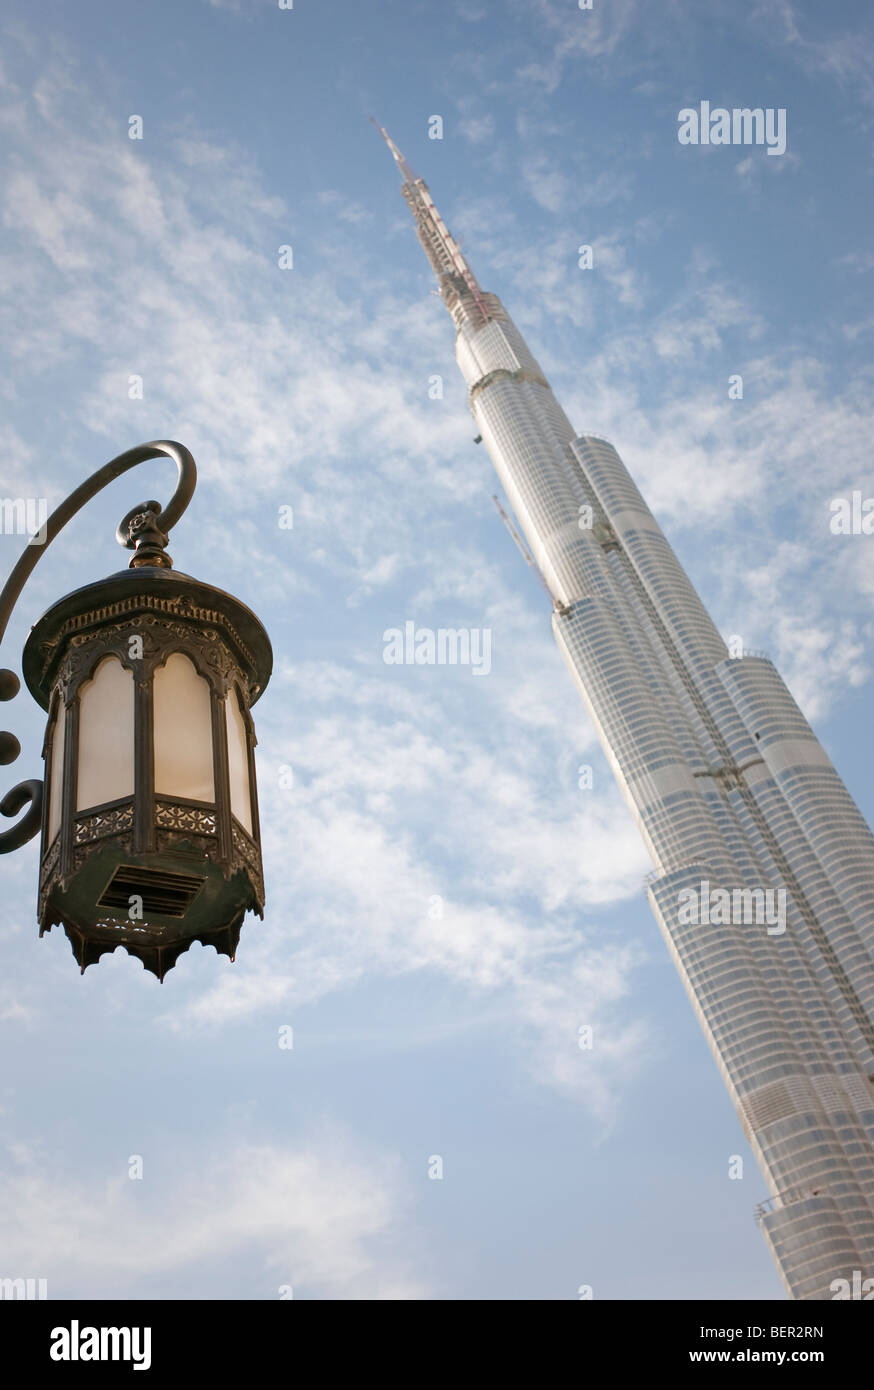 Le Burj Dubai, le plus haut bâtiment du monde avec environ 818m/2680ft en contraste avec la vieille lanterne. Lanterne dans l'accent. Banque D'Images